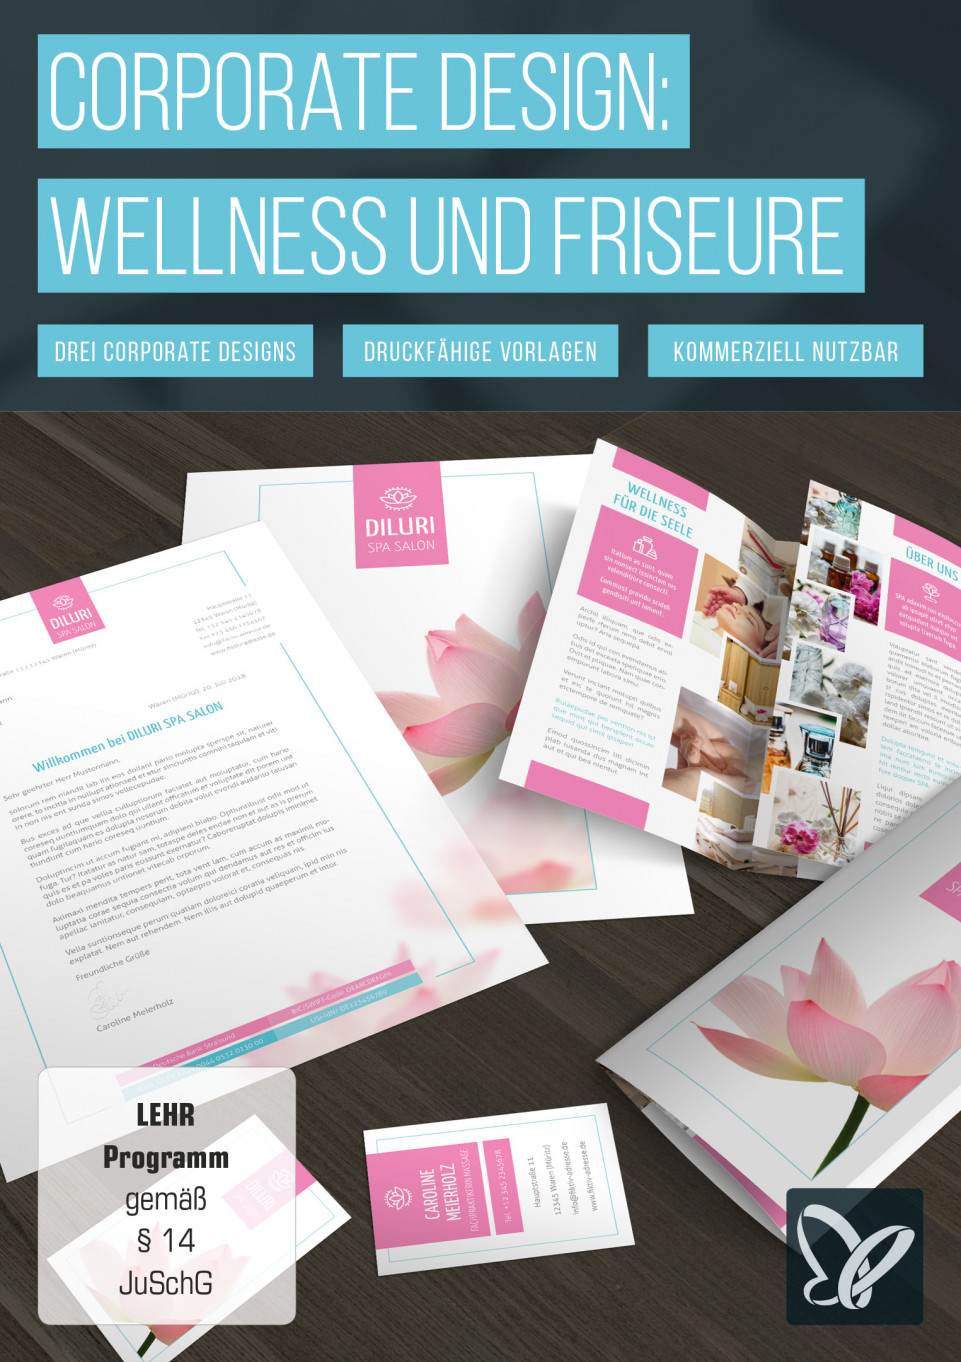 Vorlagen zur Werbung für Friseure & Wellness: Visitenkarten, Flyer & Designs